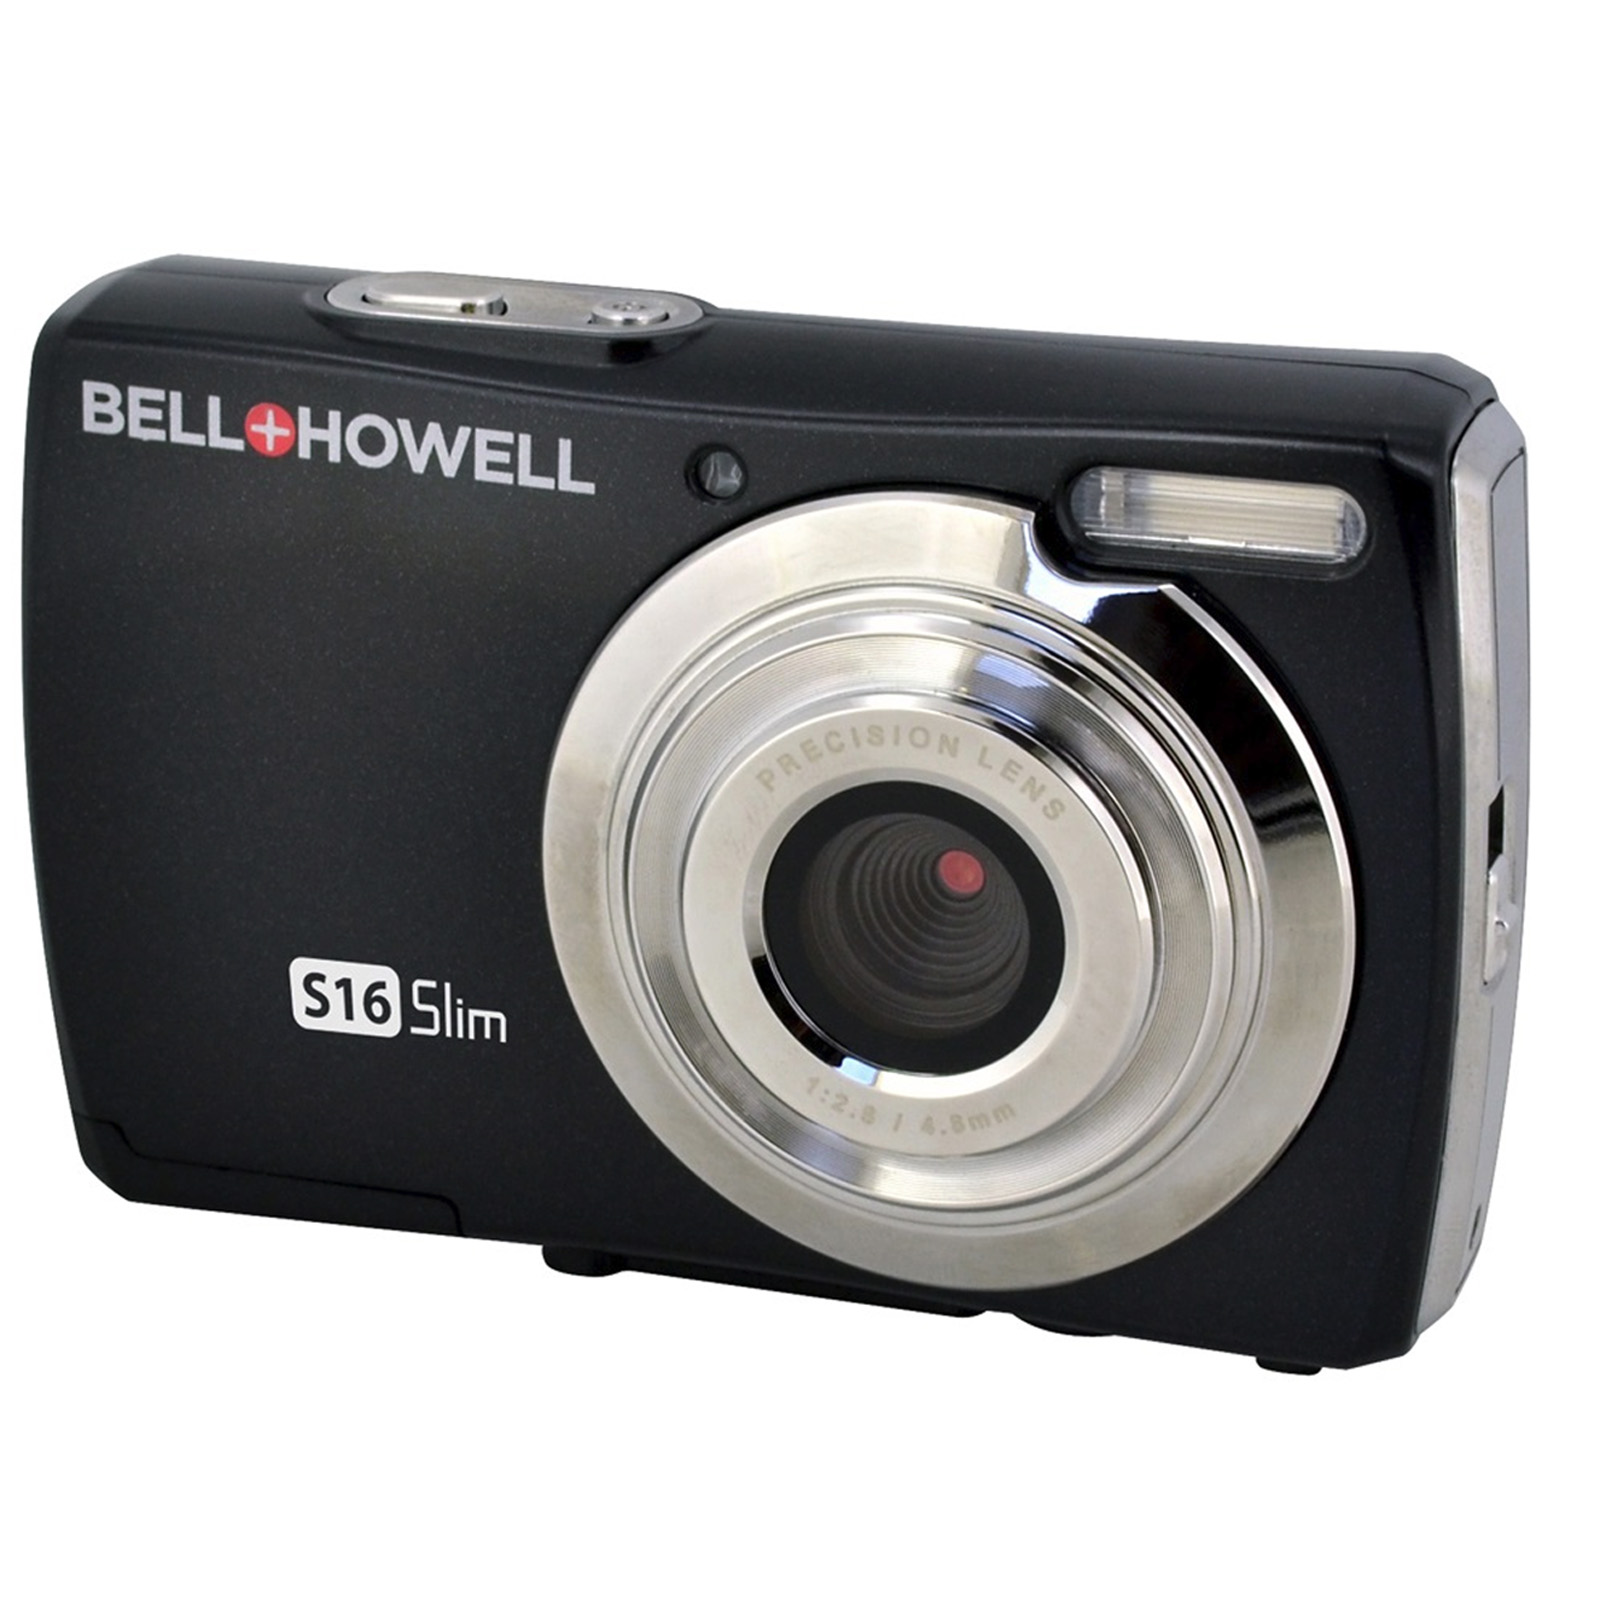 Bell+howell S16 Ultra Slim 16MP Digital Camera (Black)